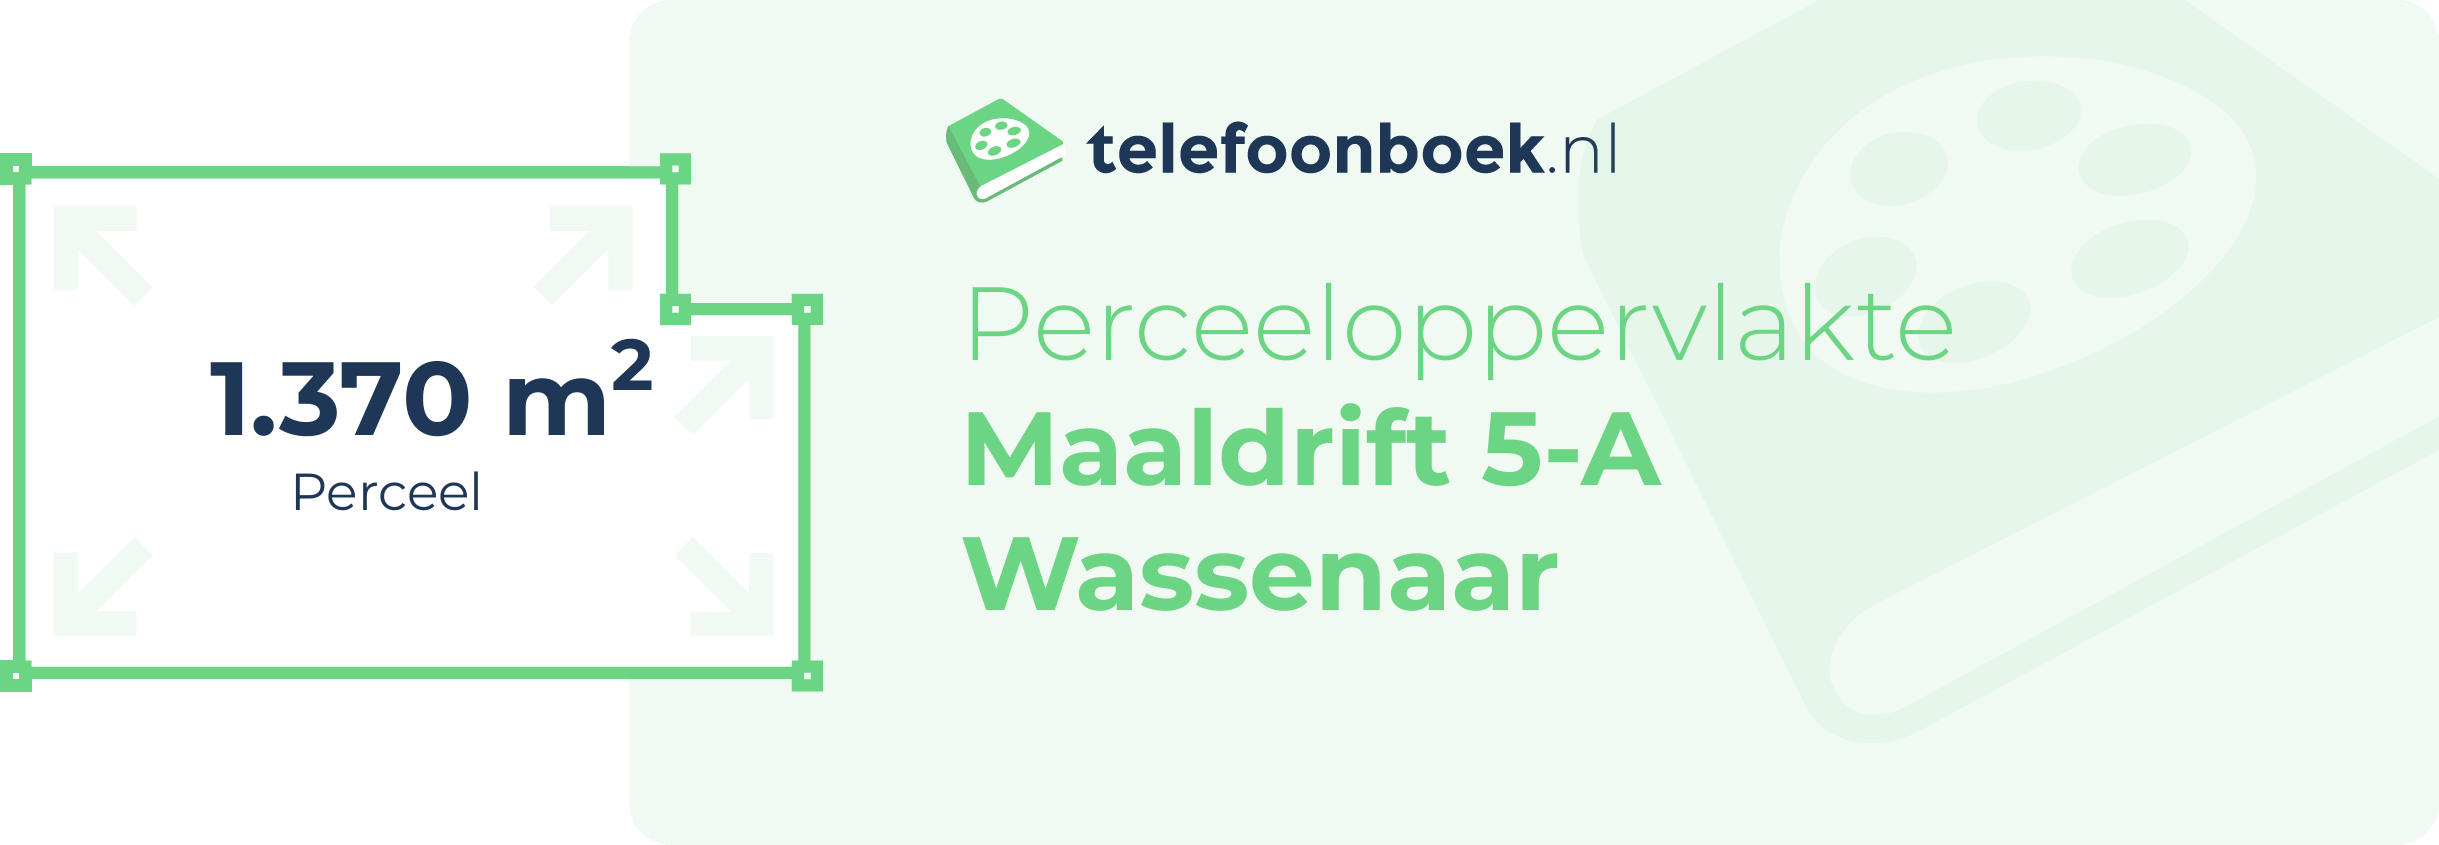 Perceeloppervlakte Maaldrift 5-A Wassenaar